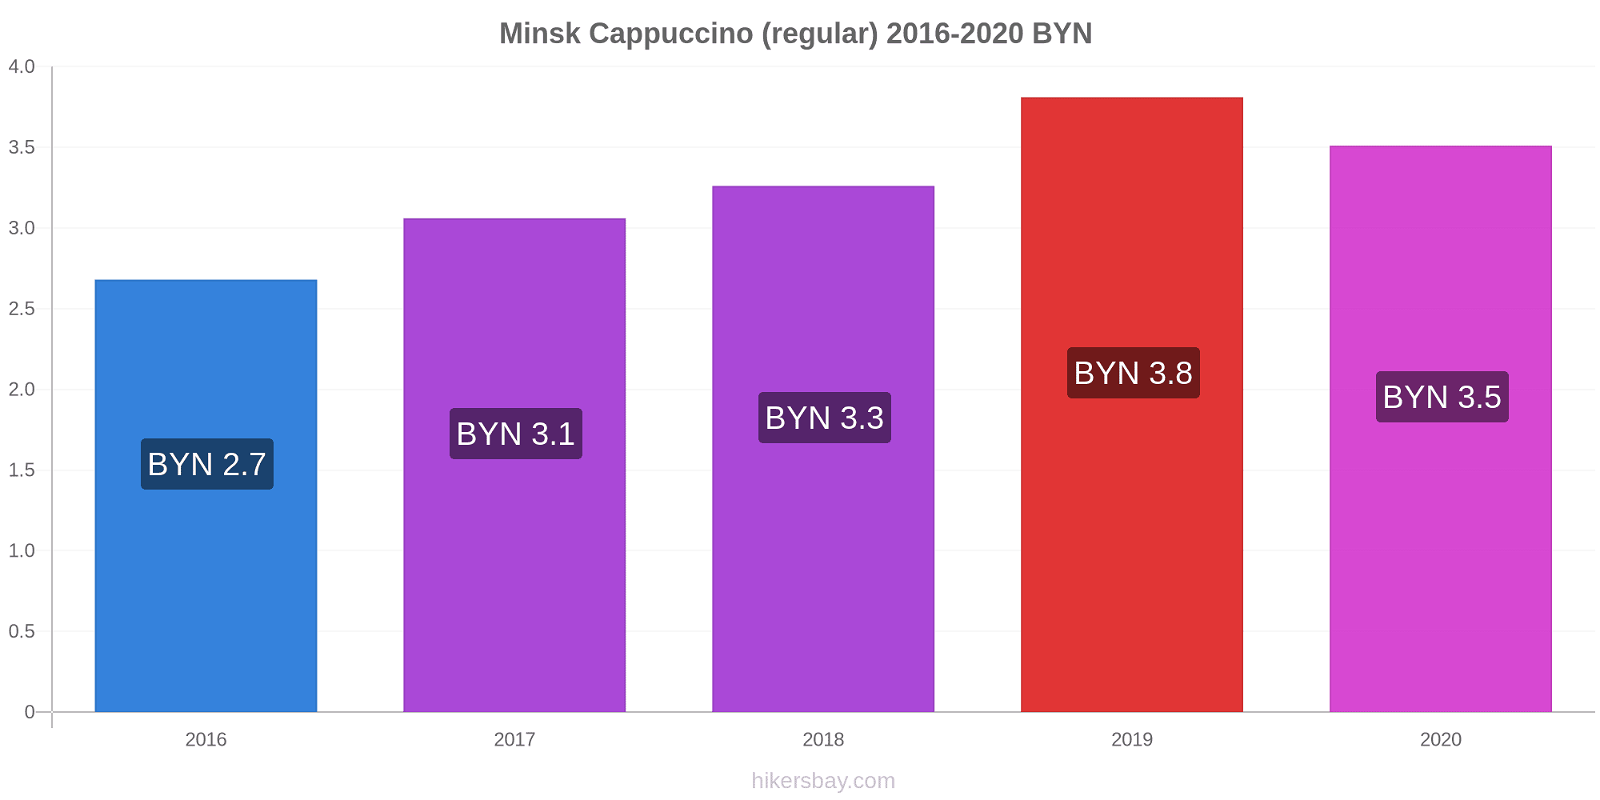 Minsk price changes Cappuccino (regular) hikersbay.com